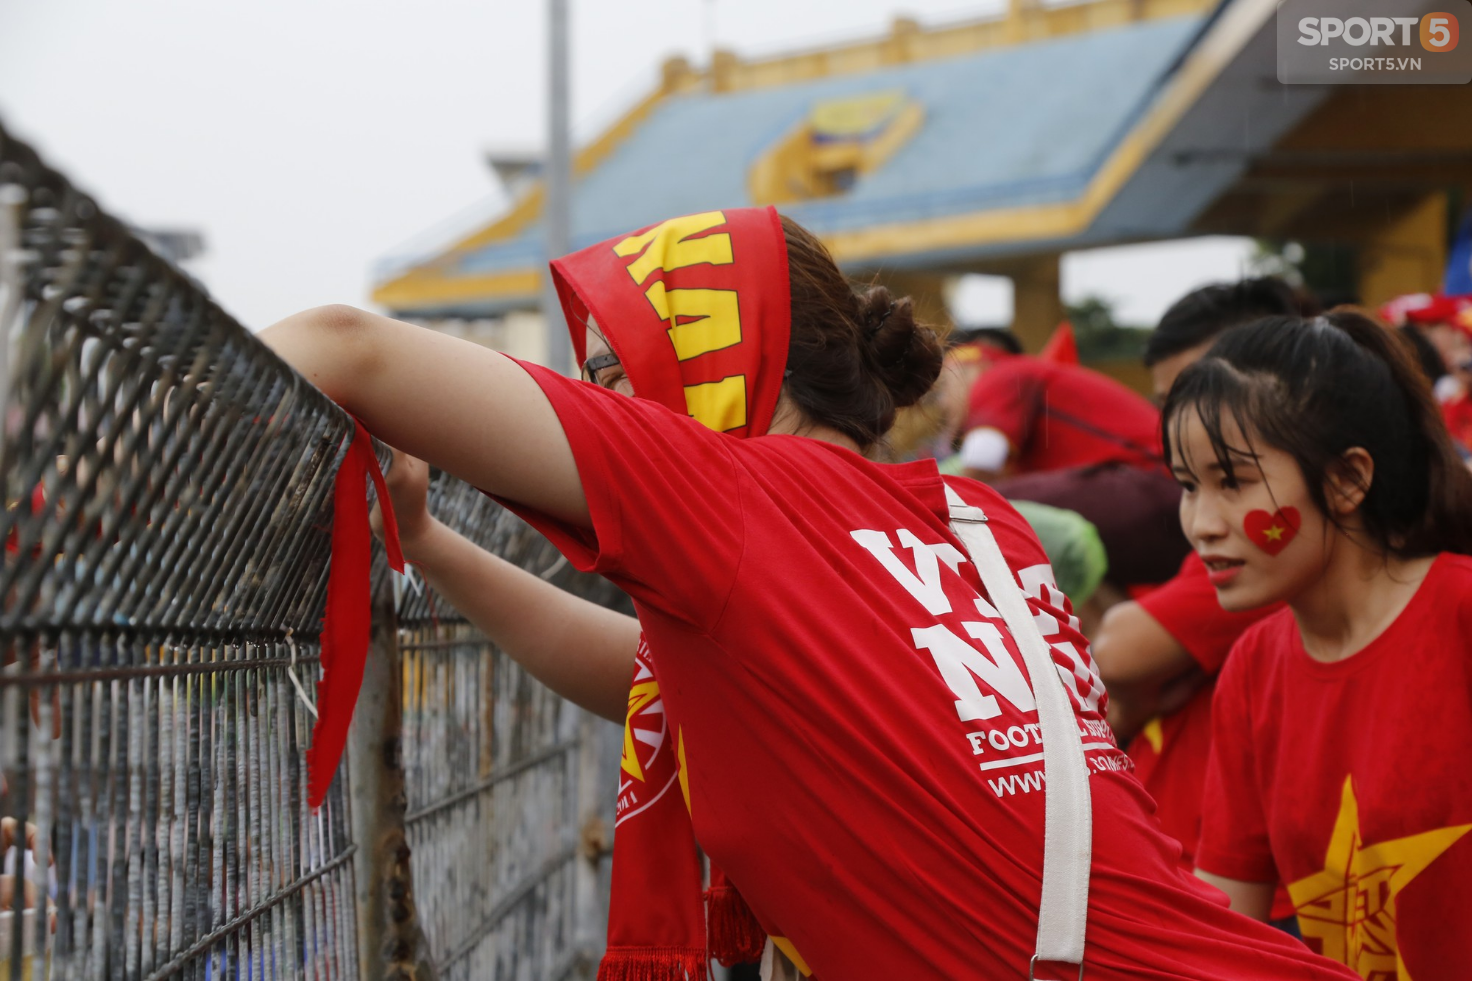 Ấm lòng hình ảnh người hâm mộ Việt Nam đội mưa tới giây cuối cùng dù đội nhà thất bại - Ảnh 4.